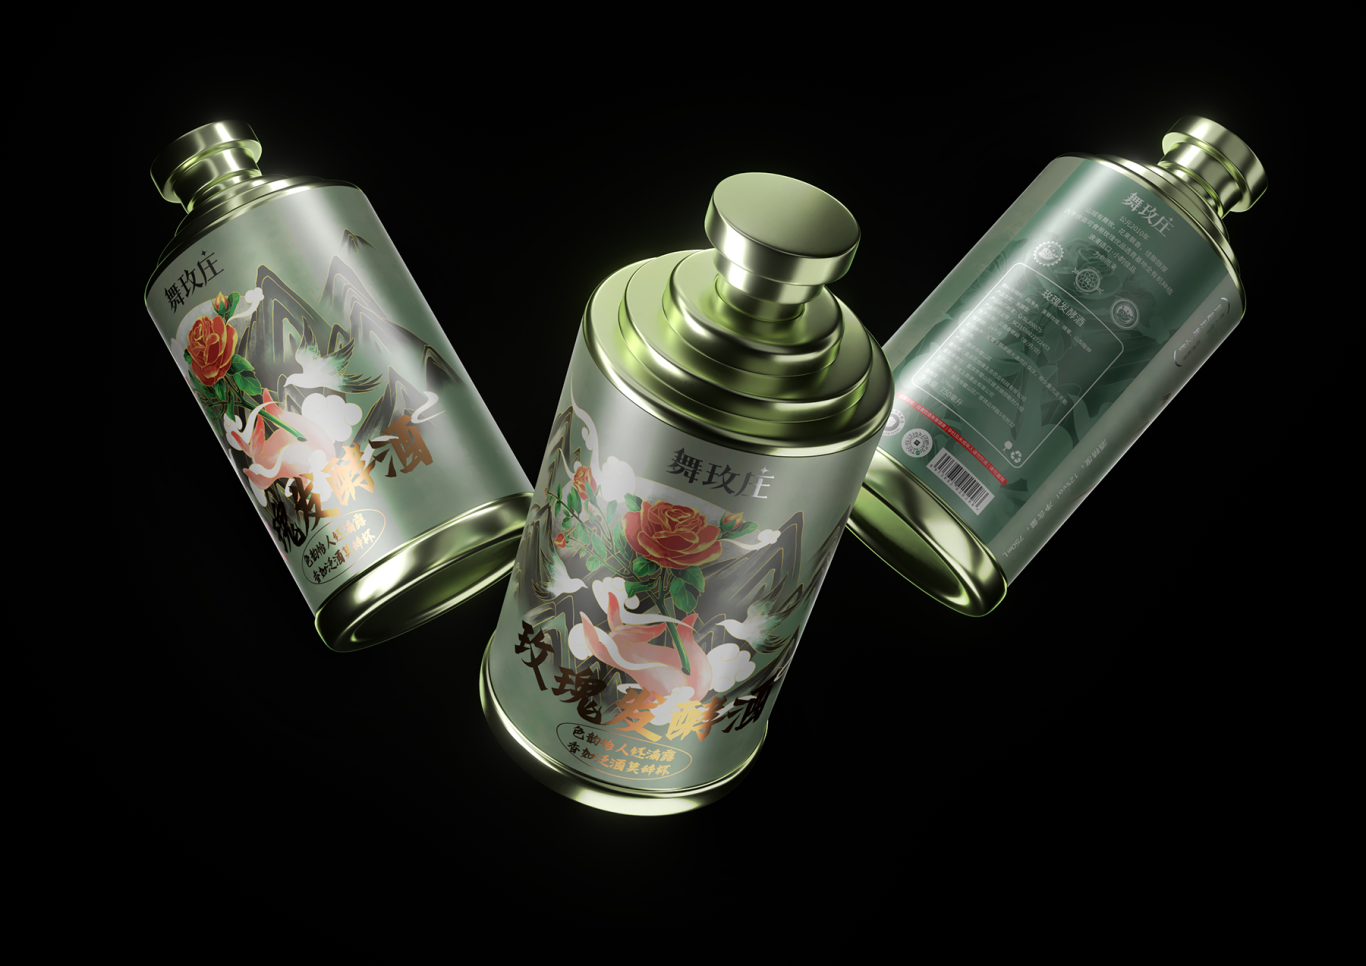 舞玫莊-果酒系列產品包裝設計圖27